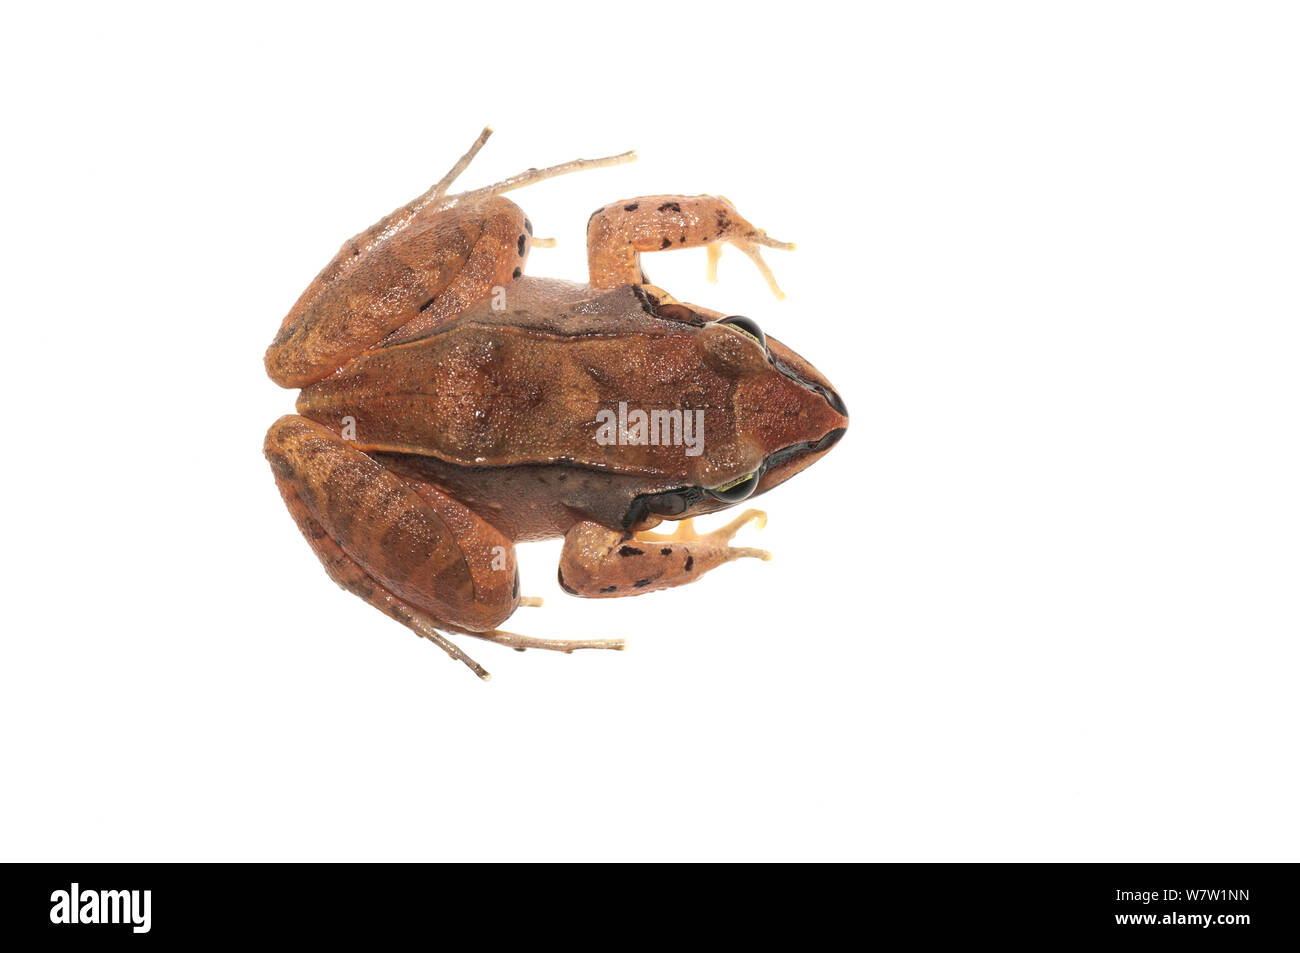 Graben Frosch (leptodactylus Chenapau mystaceus), Guyana. Meetyourneighbors.net Projekt. Stockfoto